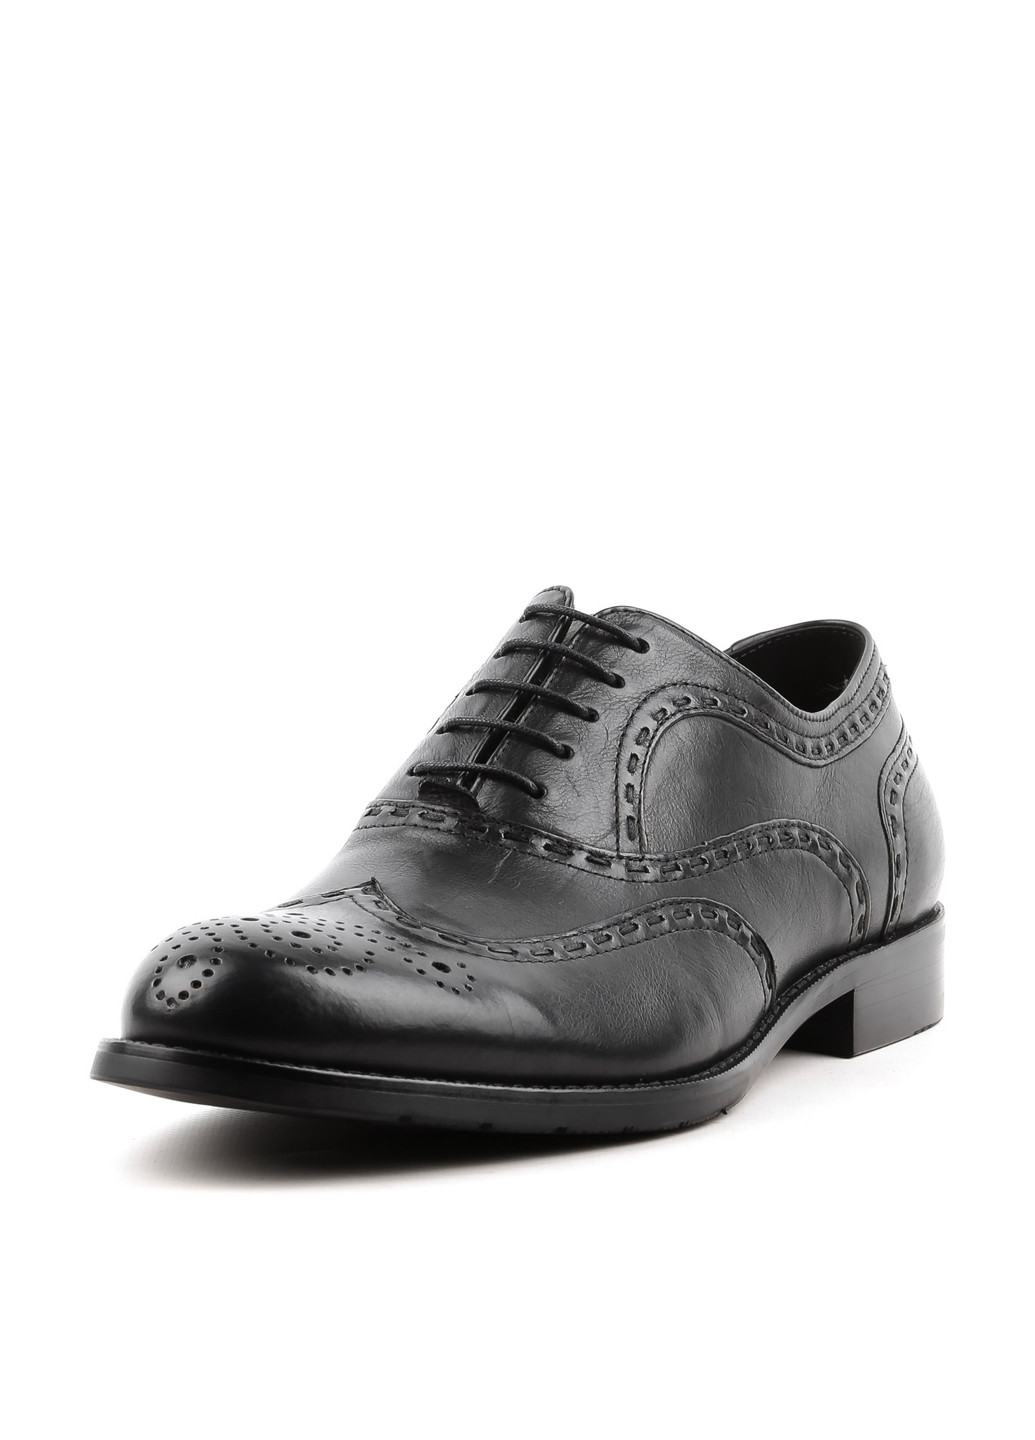 Черные классические туфли Arzoni Bazalini на шнурках